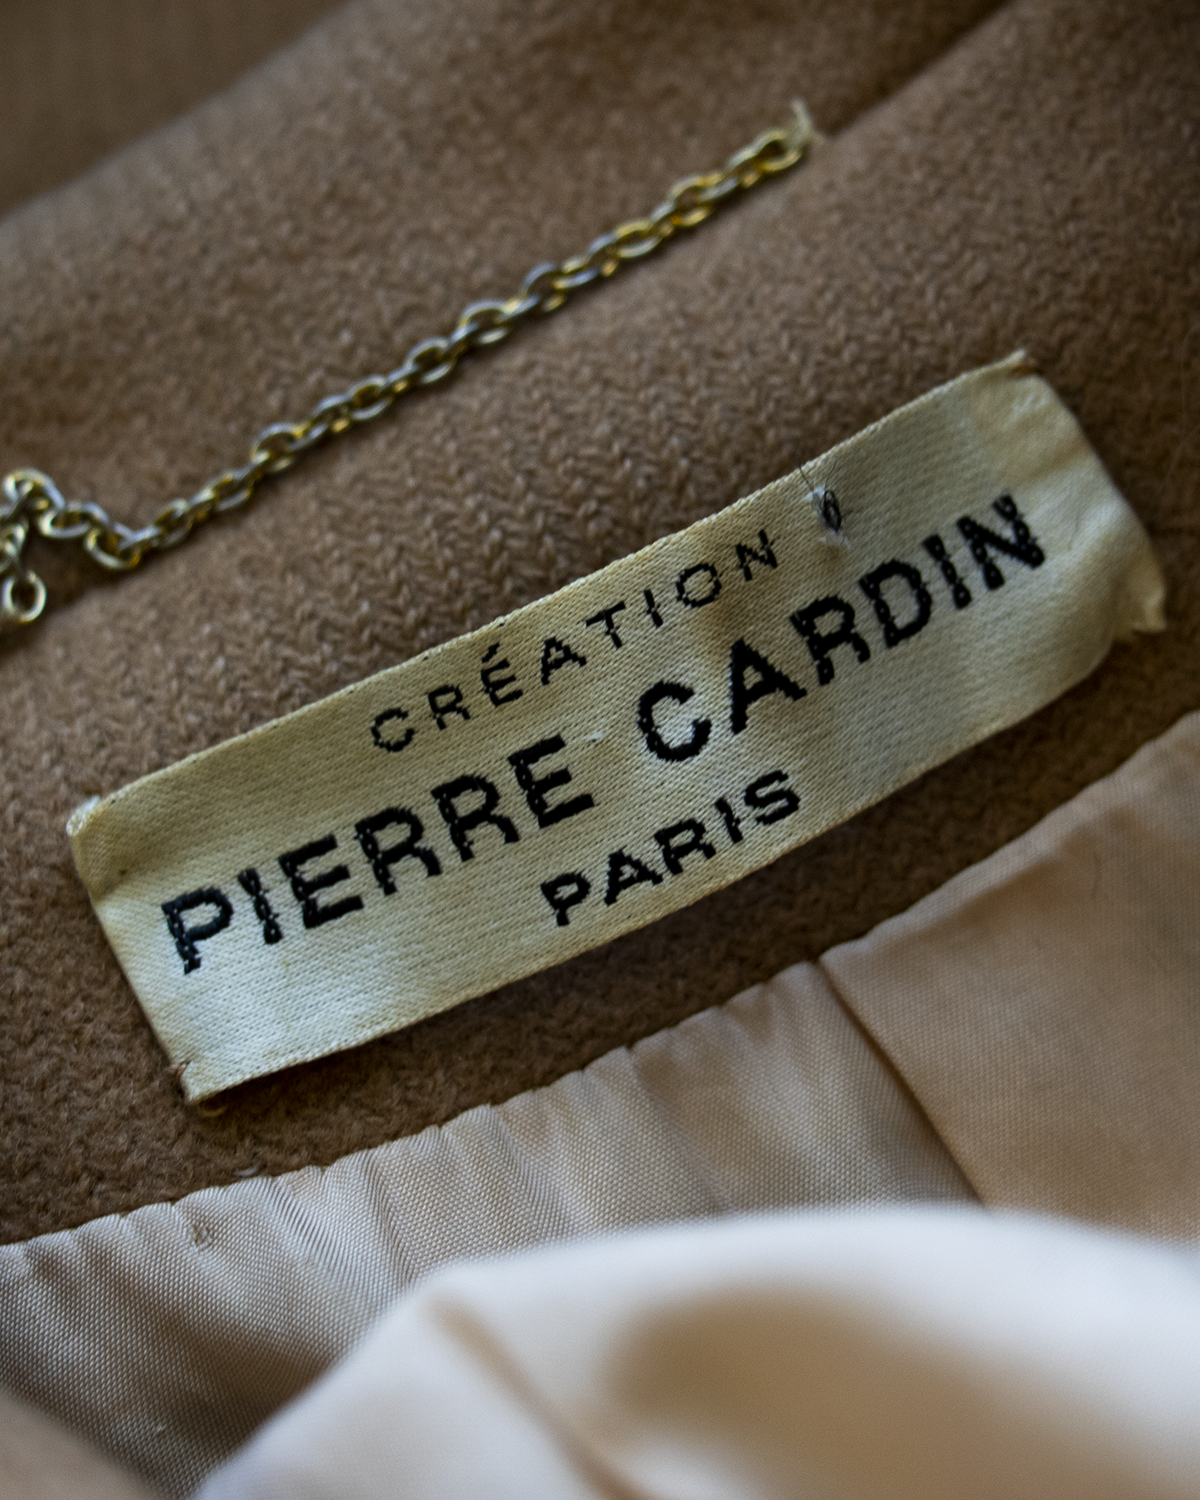 Pierre Cardin Wool Brown Coat from 1970s